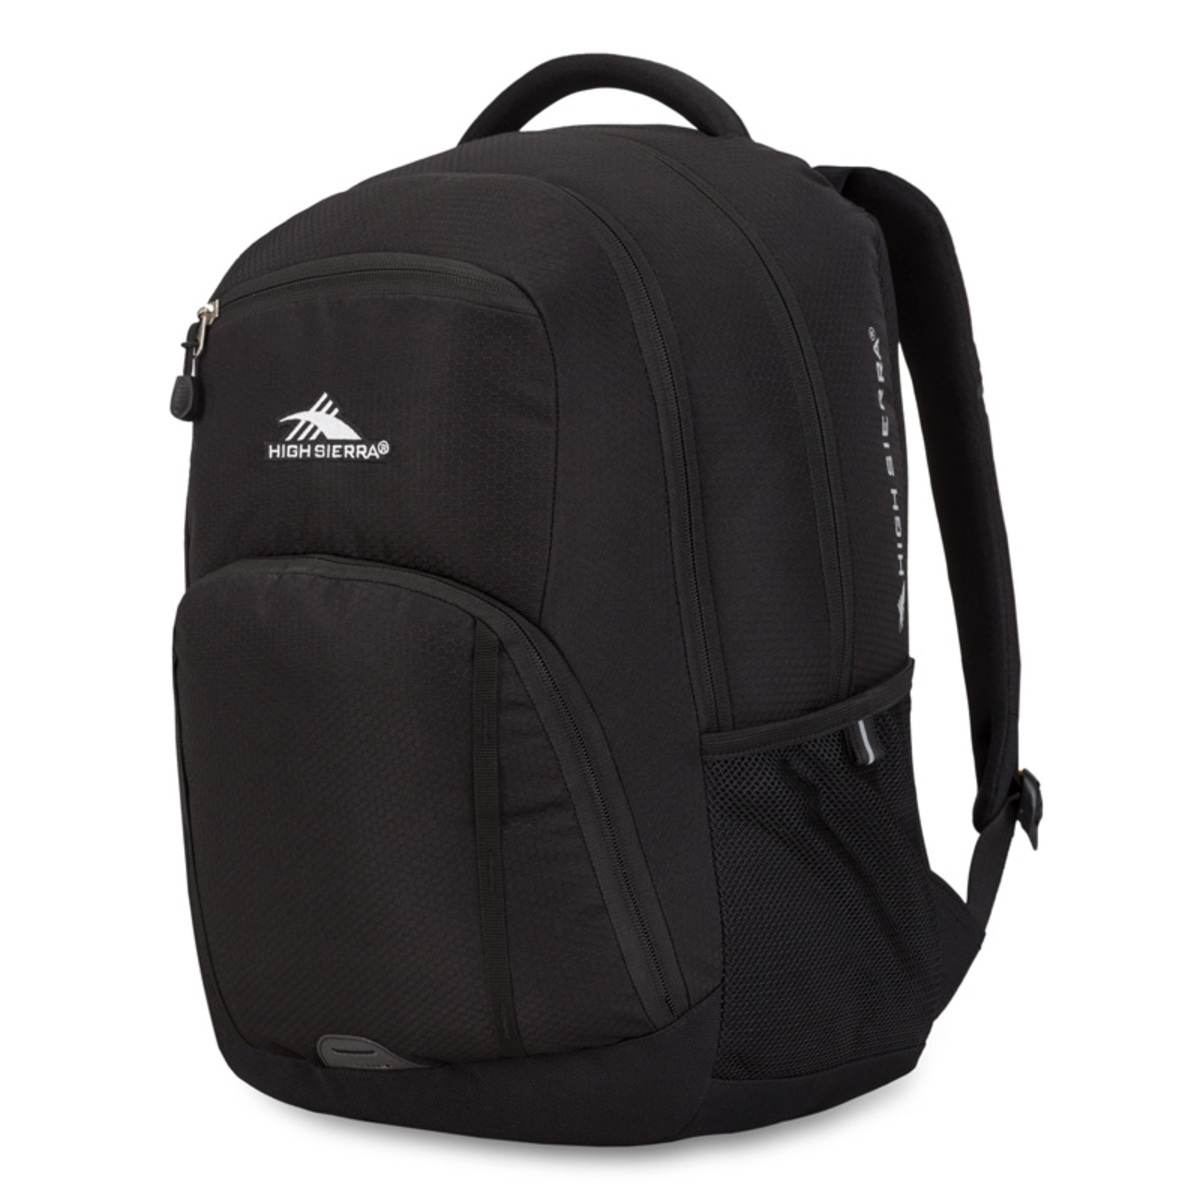 High Sierra RipRap Everyday Backpack in Black | Costco UK